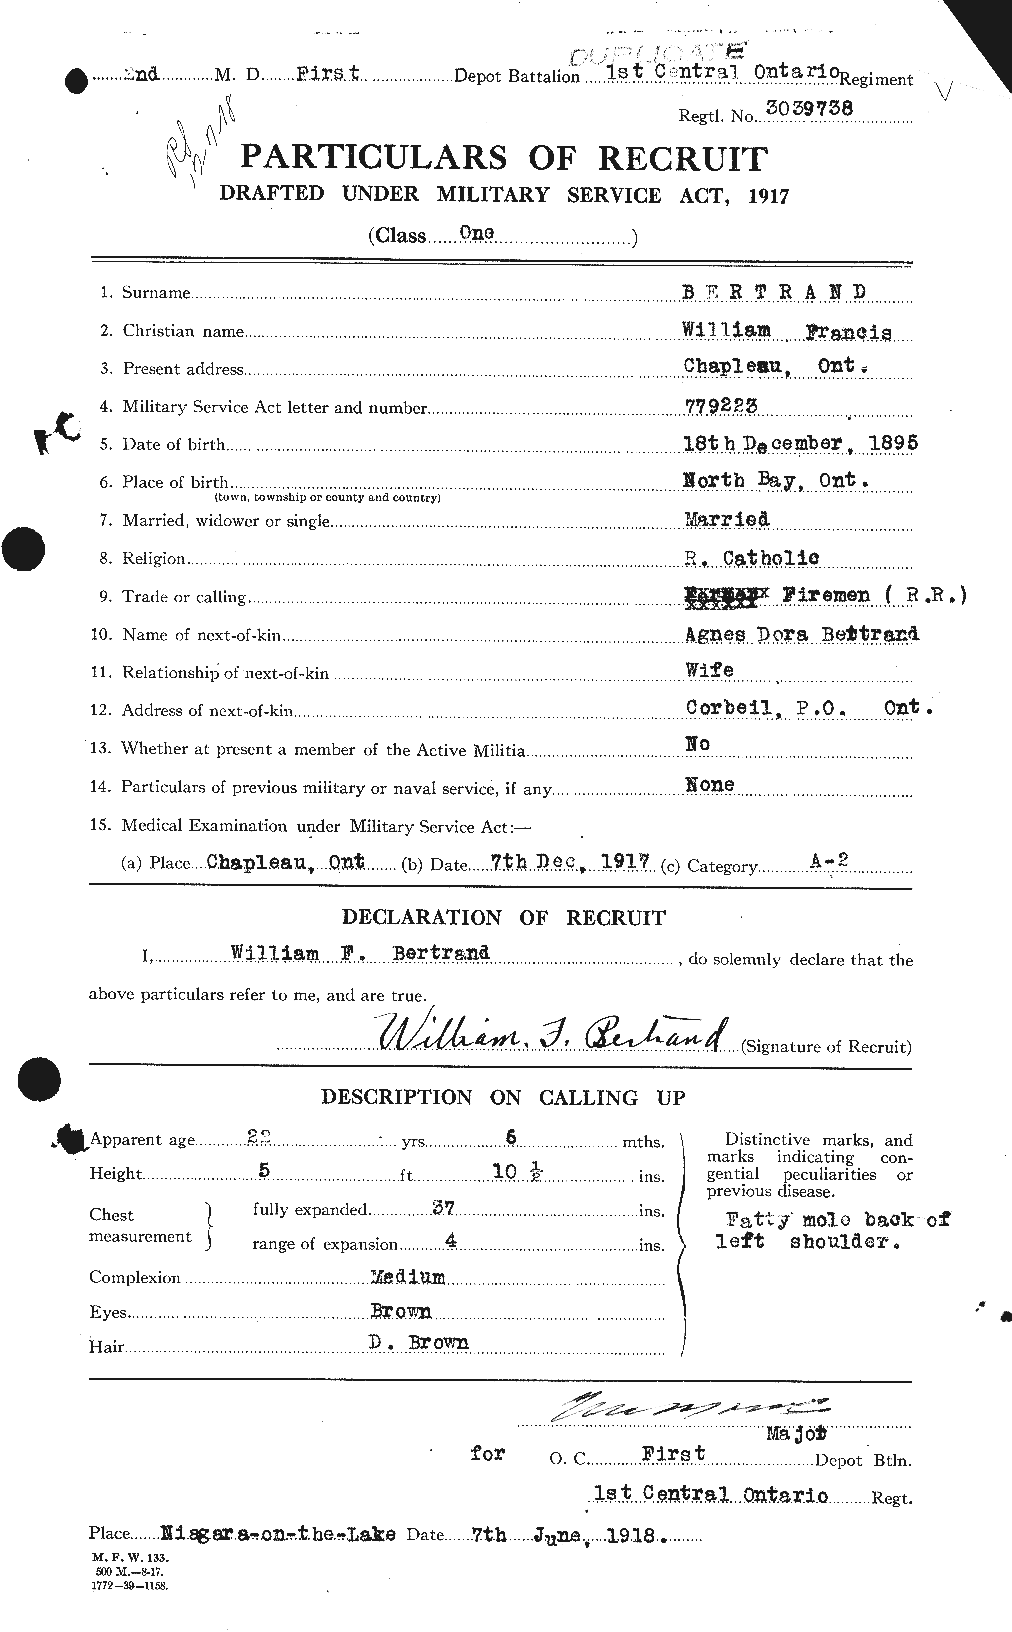 Dossiers du Personnel de la Première Guerre mondiale - CEC 238854a